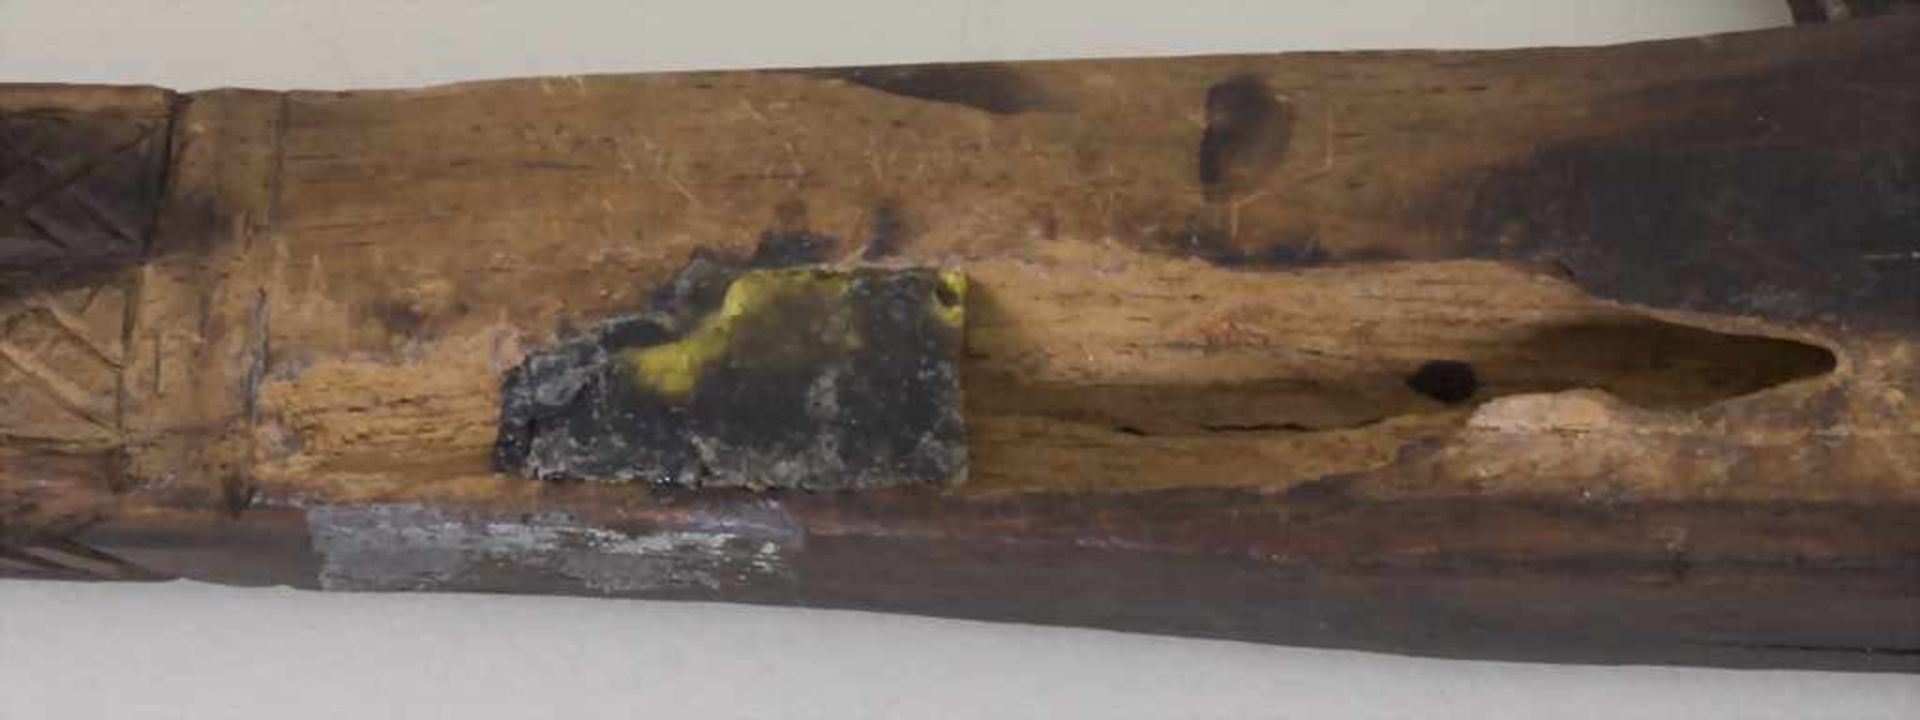 Axt mit Haken / An axe with hook, wohl NordafrikaMaterial: Holz, dunkel gebeizt, Eisen, Länge: 54 - Bild 3 aus 3